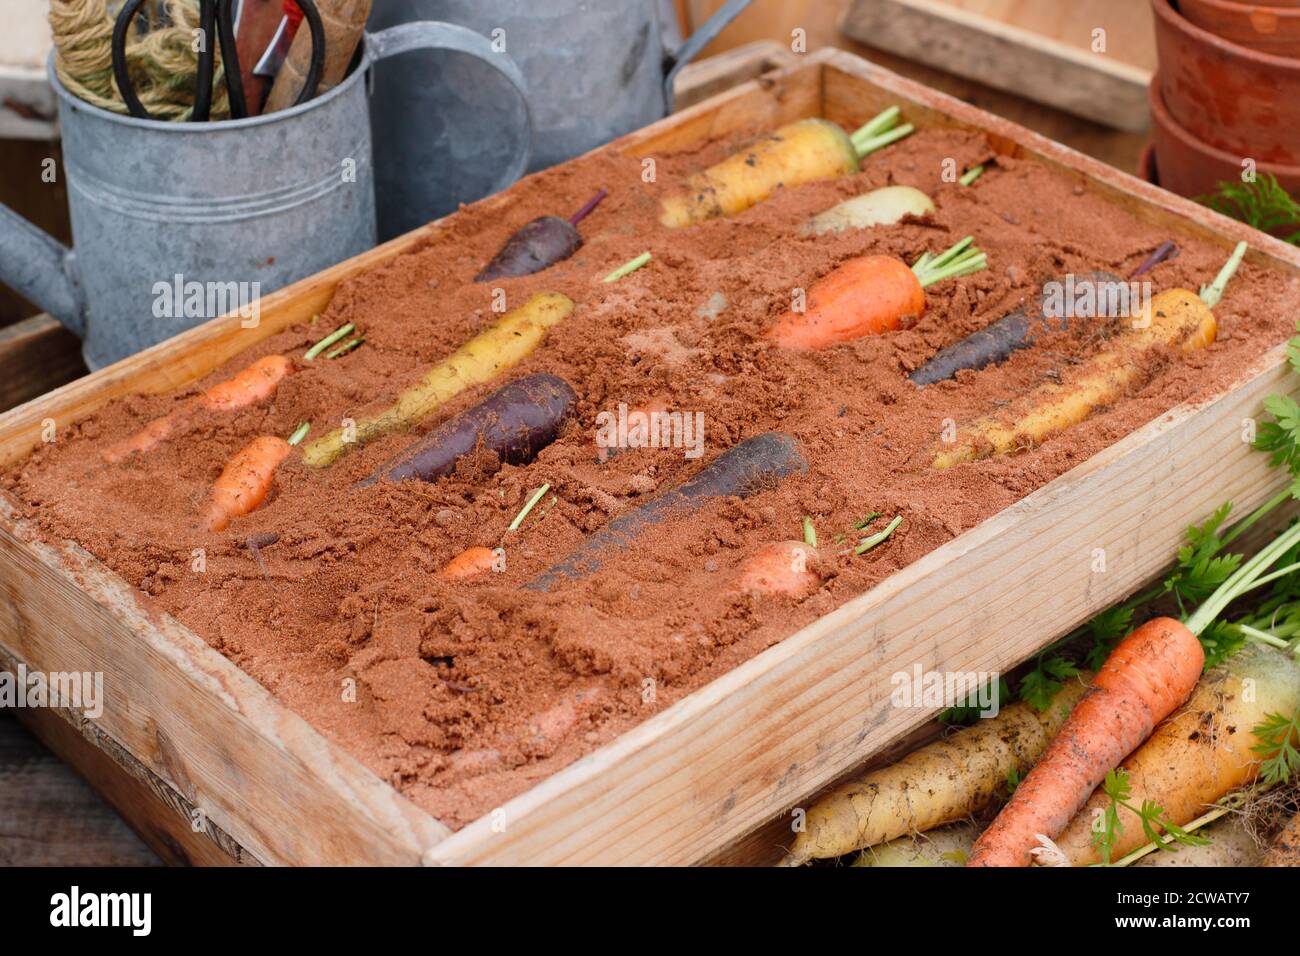 Stoccaggio carote arcobaleno in scatola di legno di sabbia umida - strato superiore di sabbia omesso per visualizzare la verdura. Foto Stock